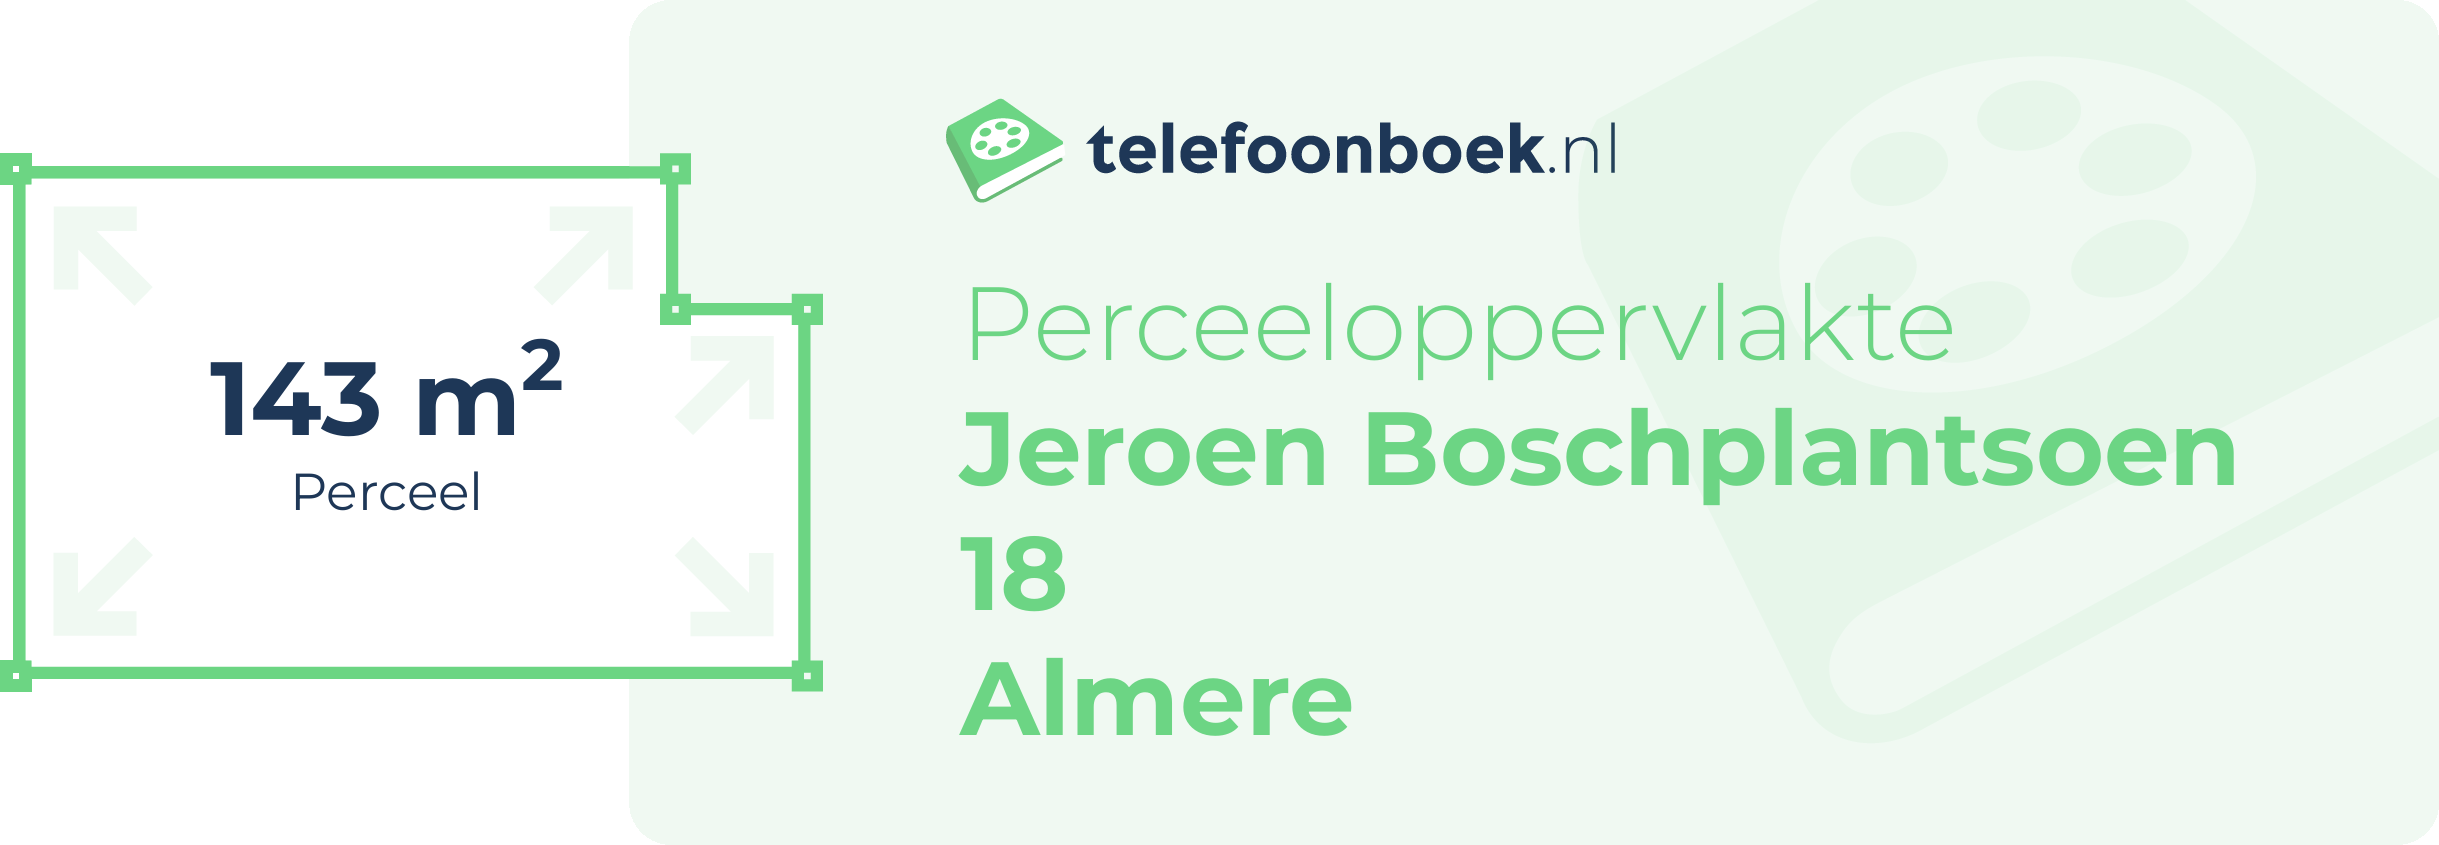 Perceeloppervlakte Jeroen Boschplantsoen 18 Almere